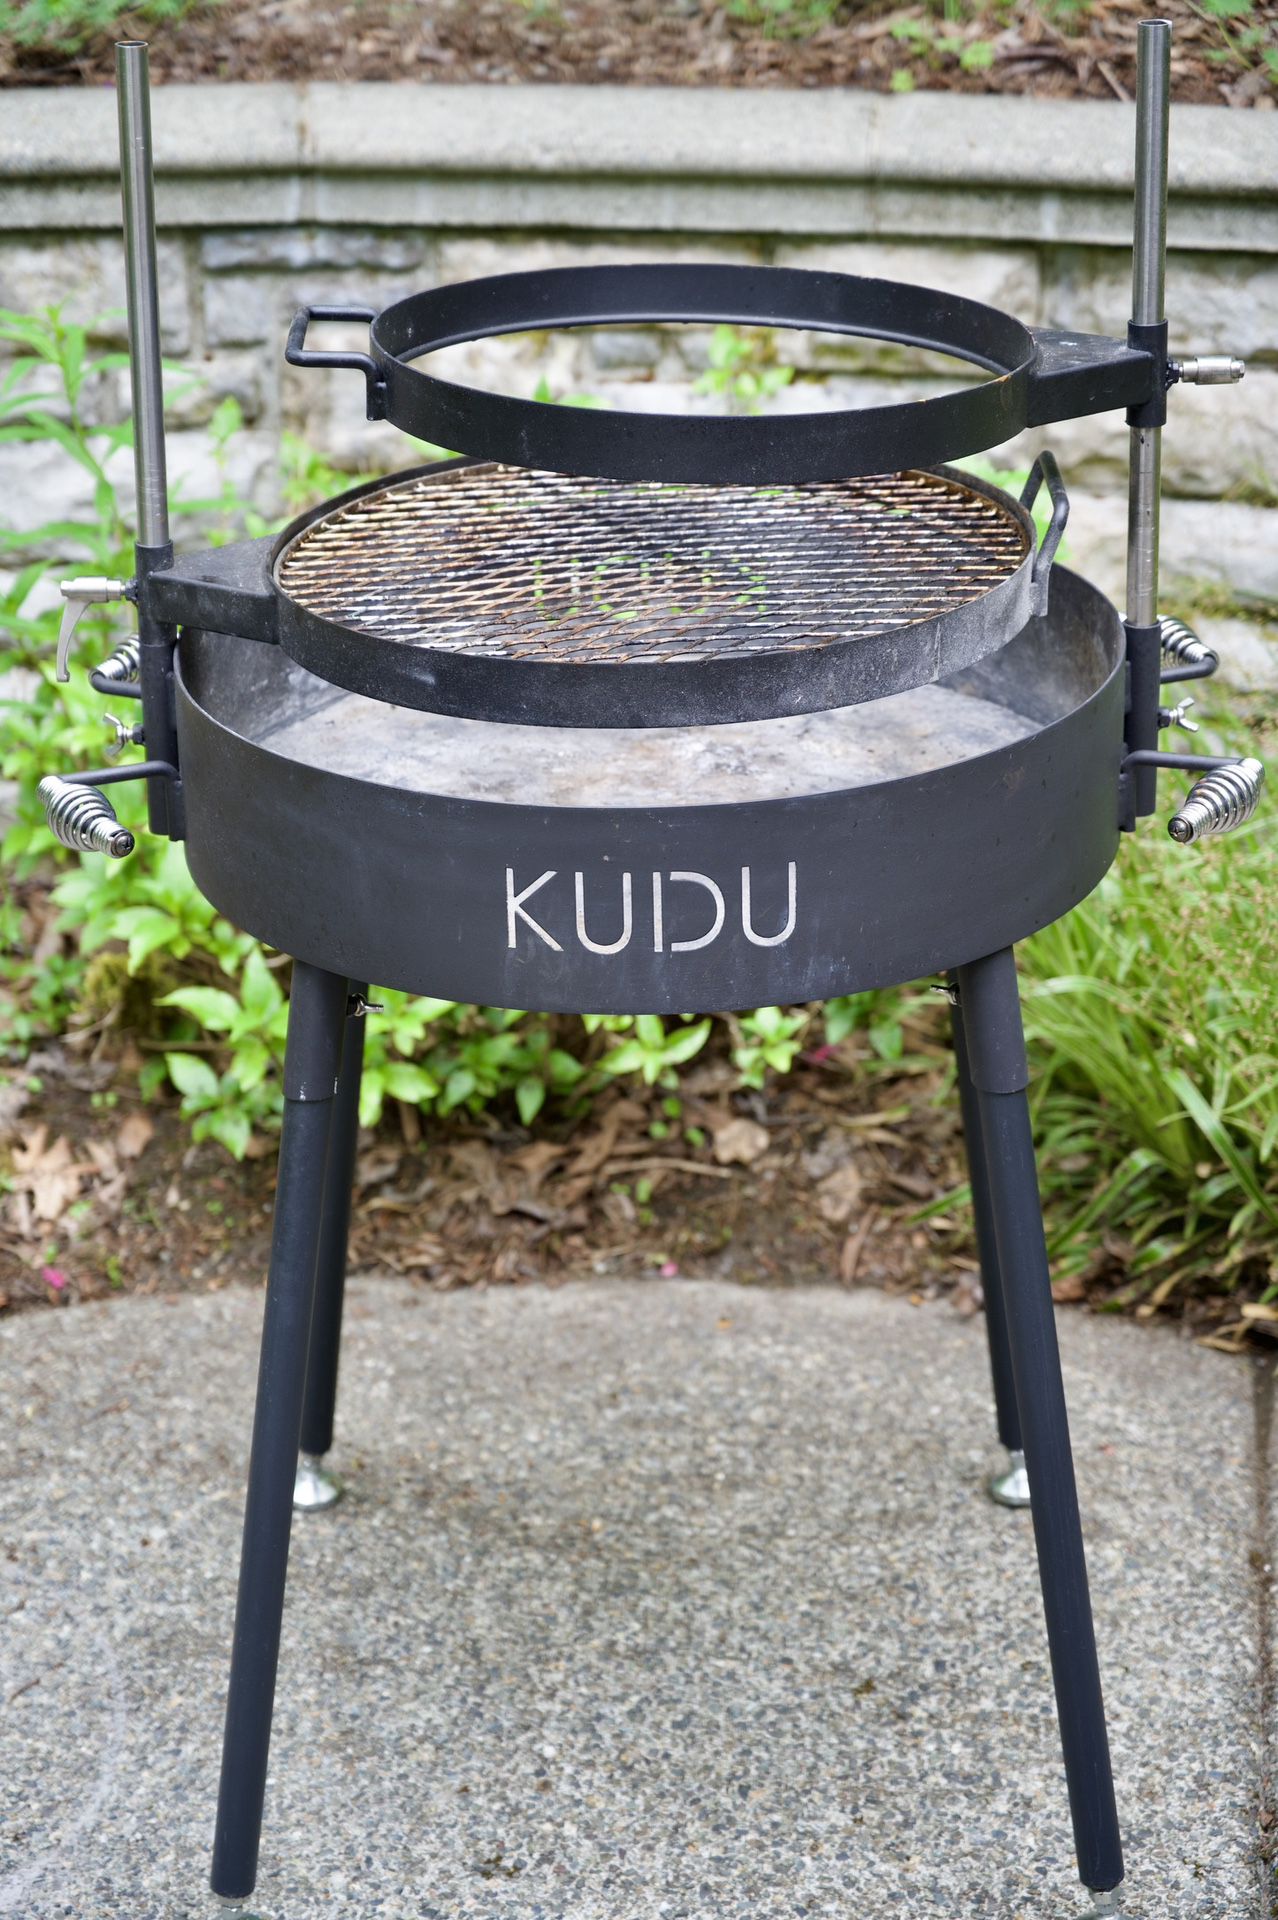 Kudu charcoal grill